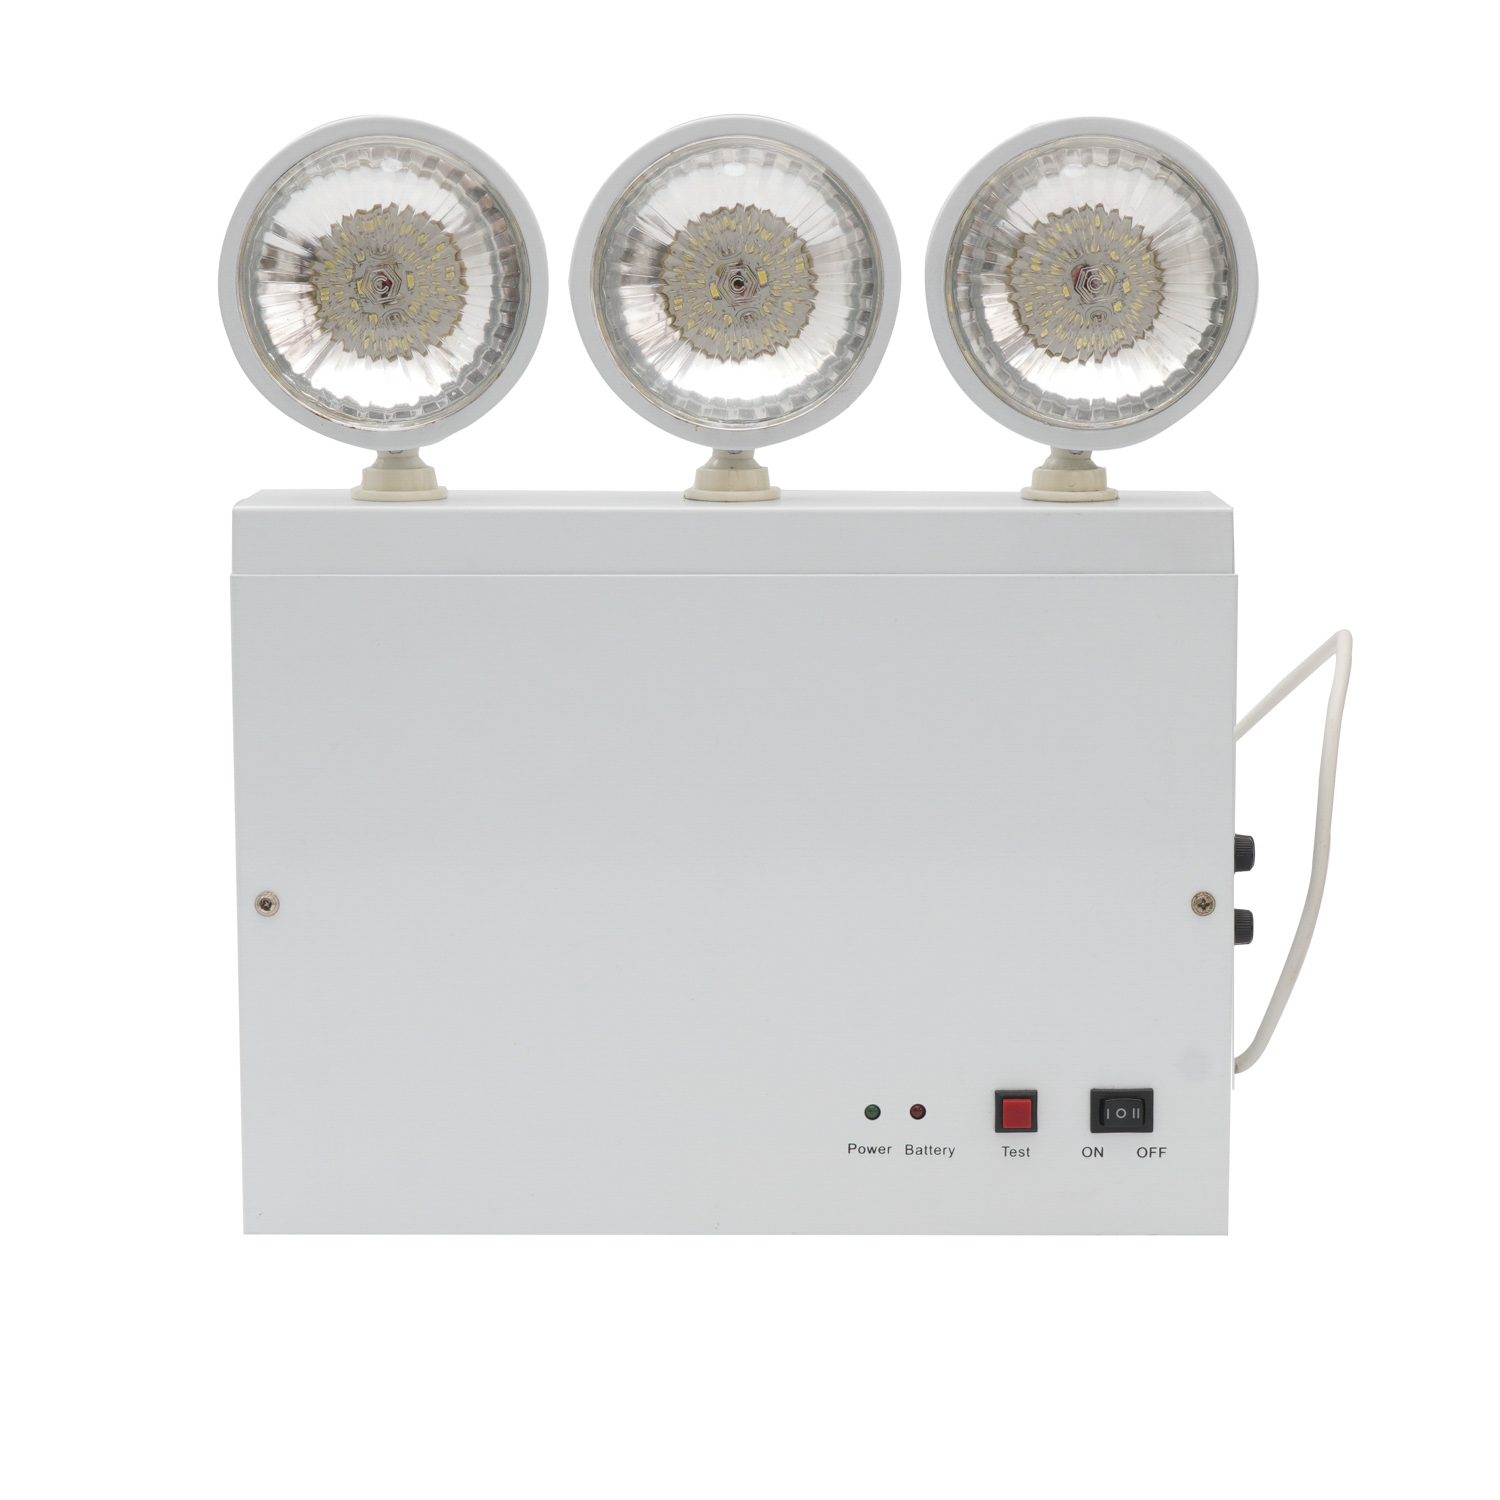 Weißes LED-Notlicht mit drei Köpfen, wartungsfrei, wiederaufladbarer Blei-Säure-Akku. LED-Notlichter